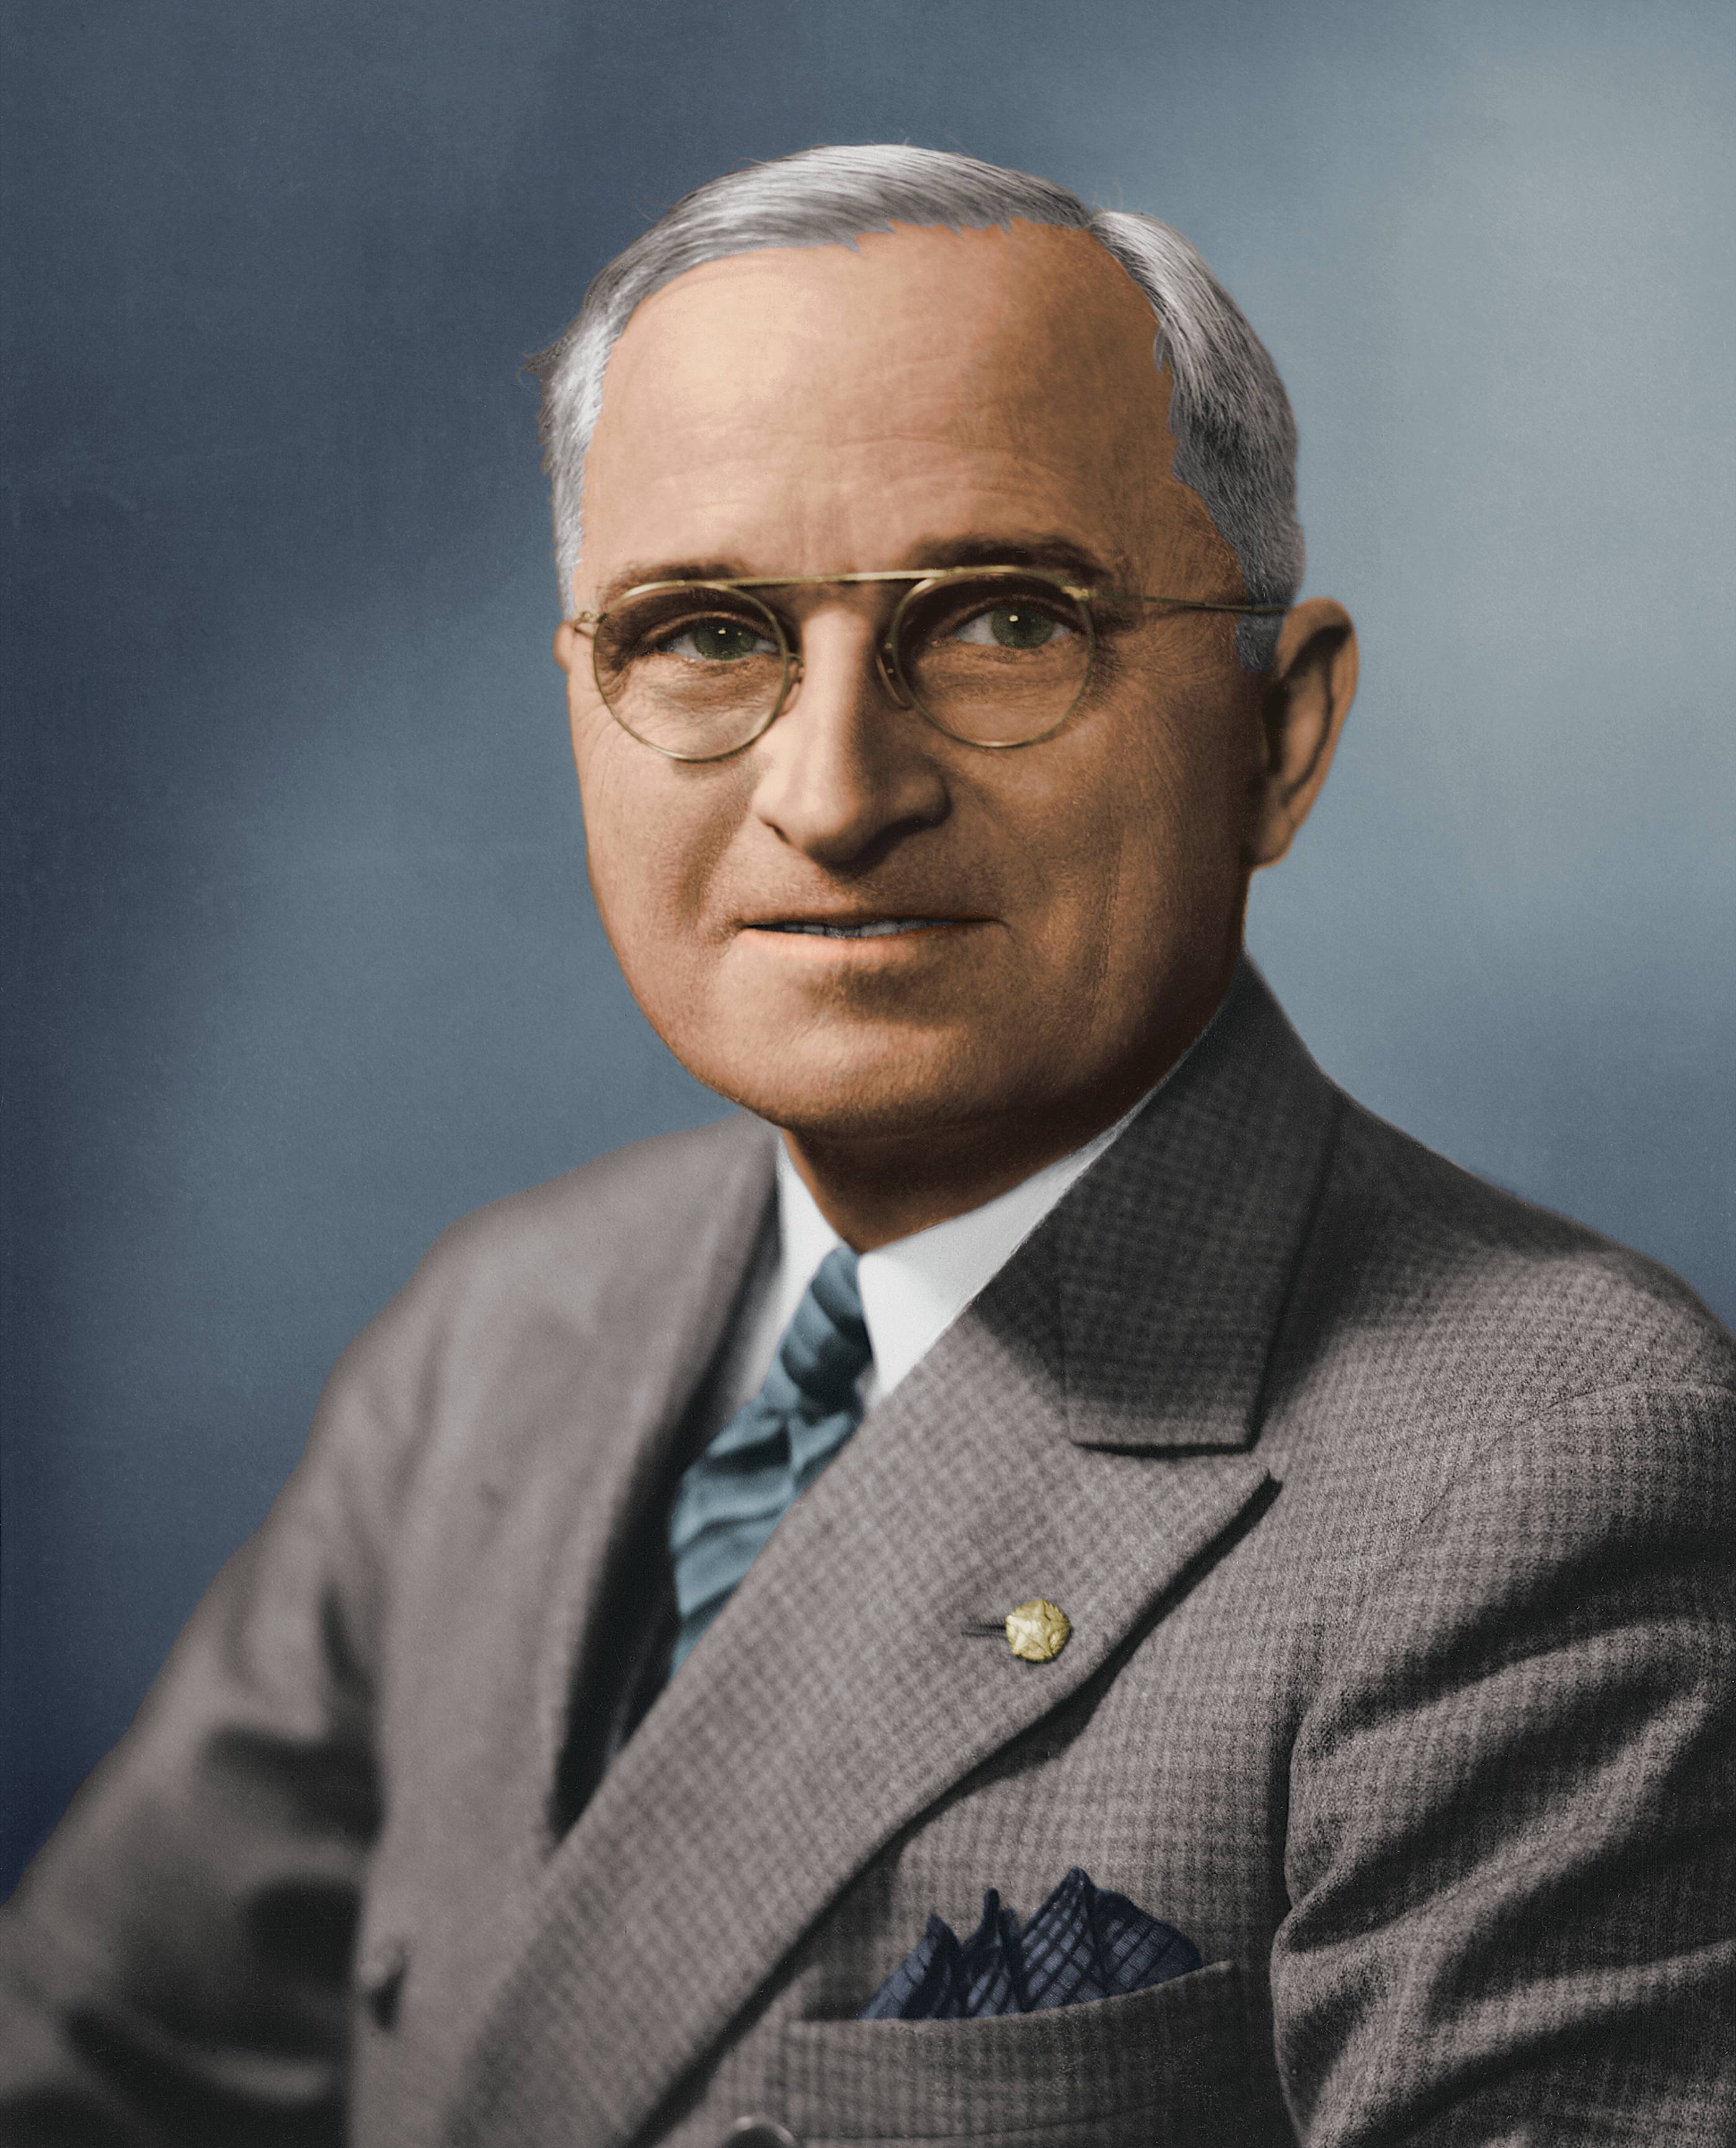 Biografii comentate (XLXIX). Harry Truman, primul campion anticomunist/ de Călin Hentea